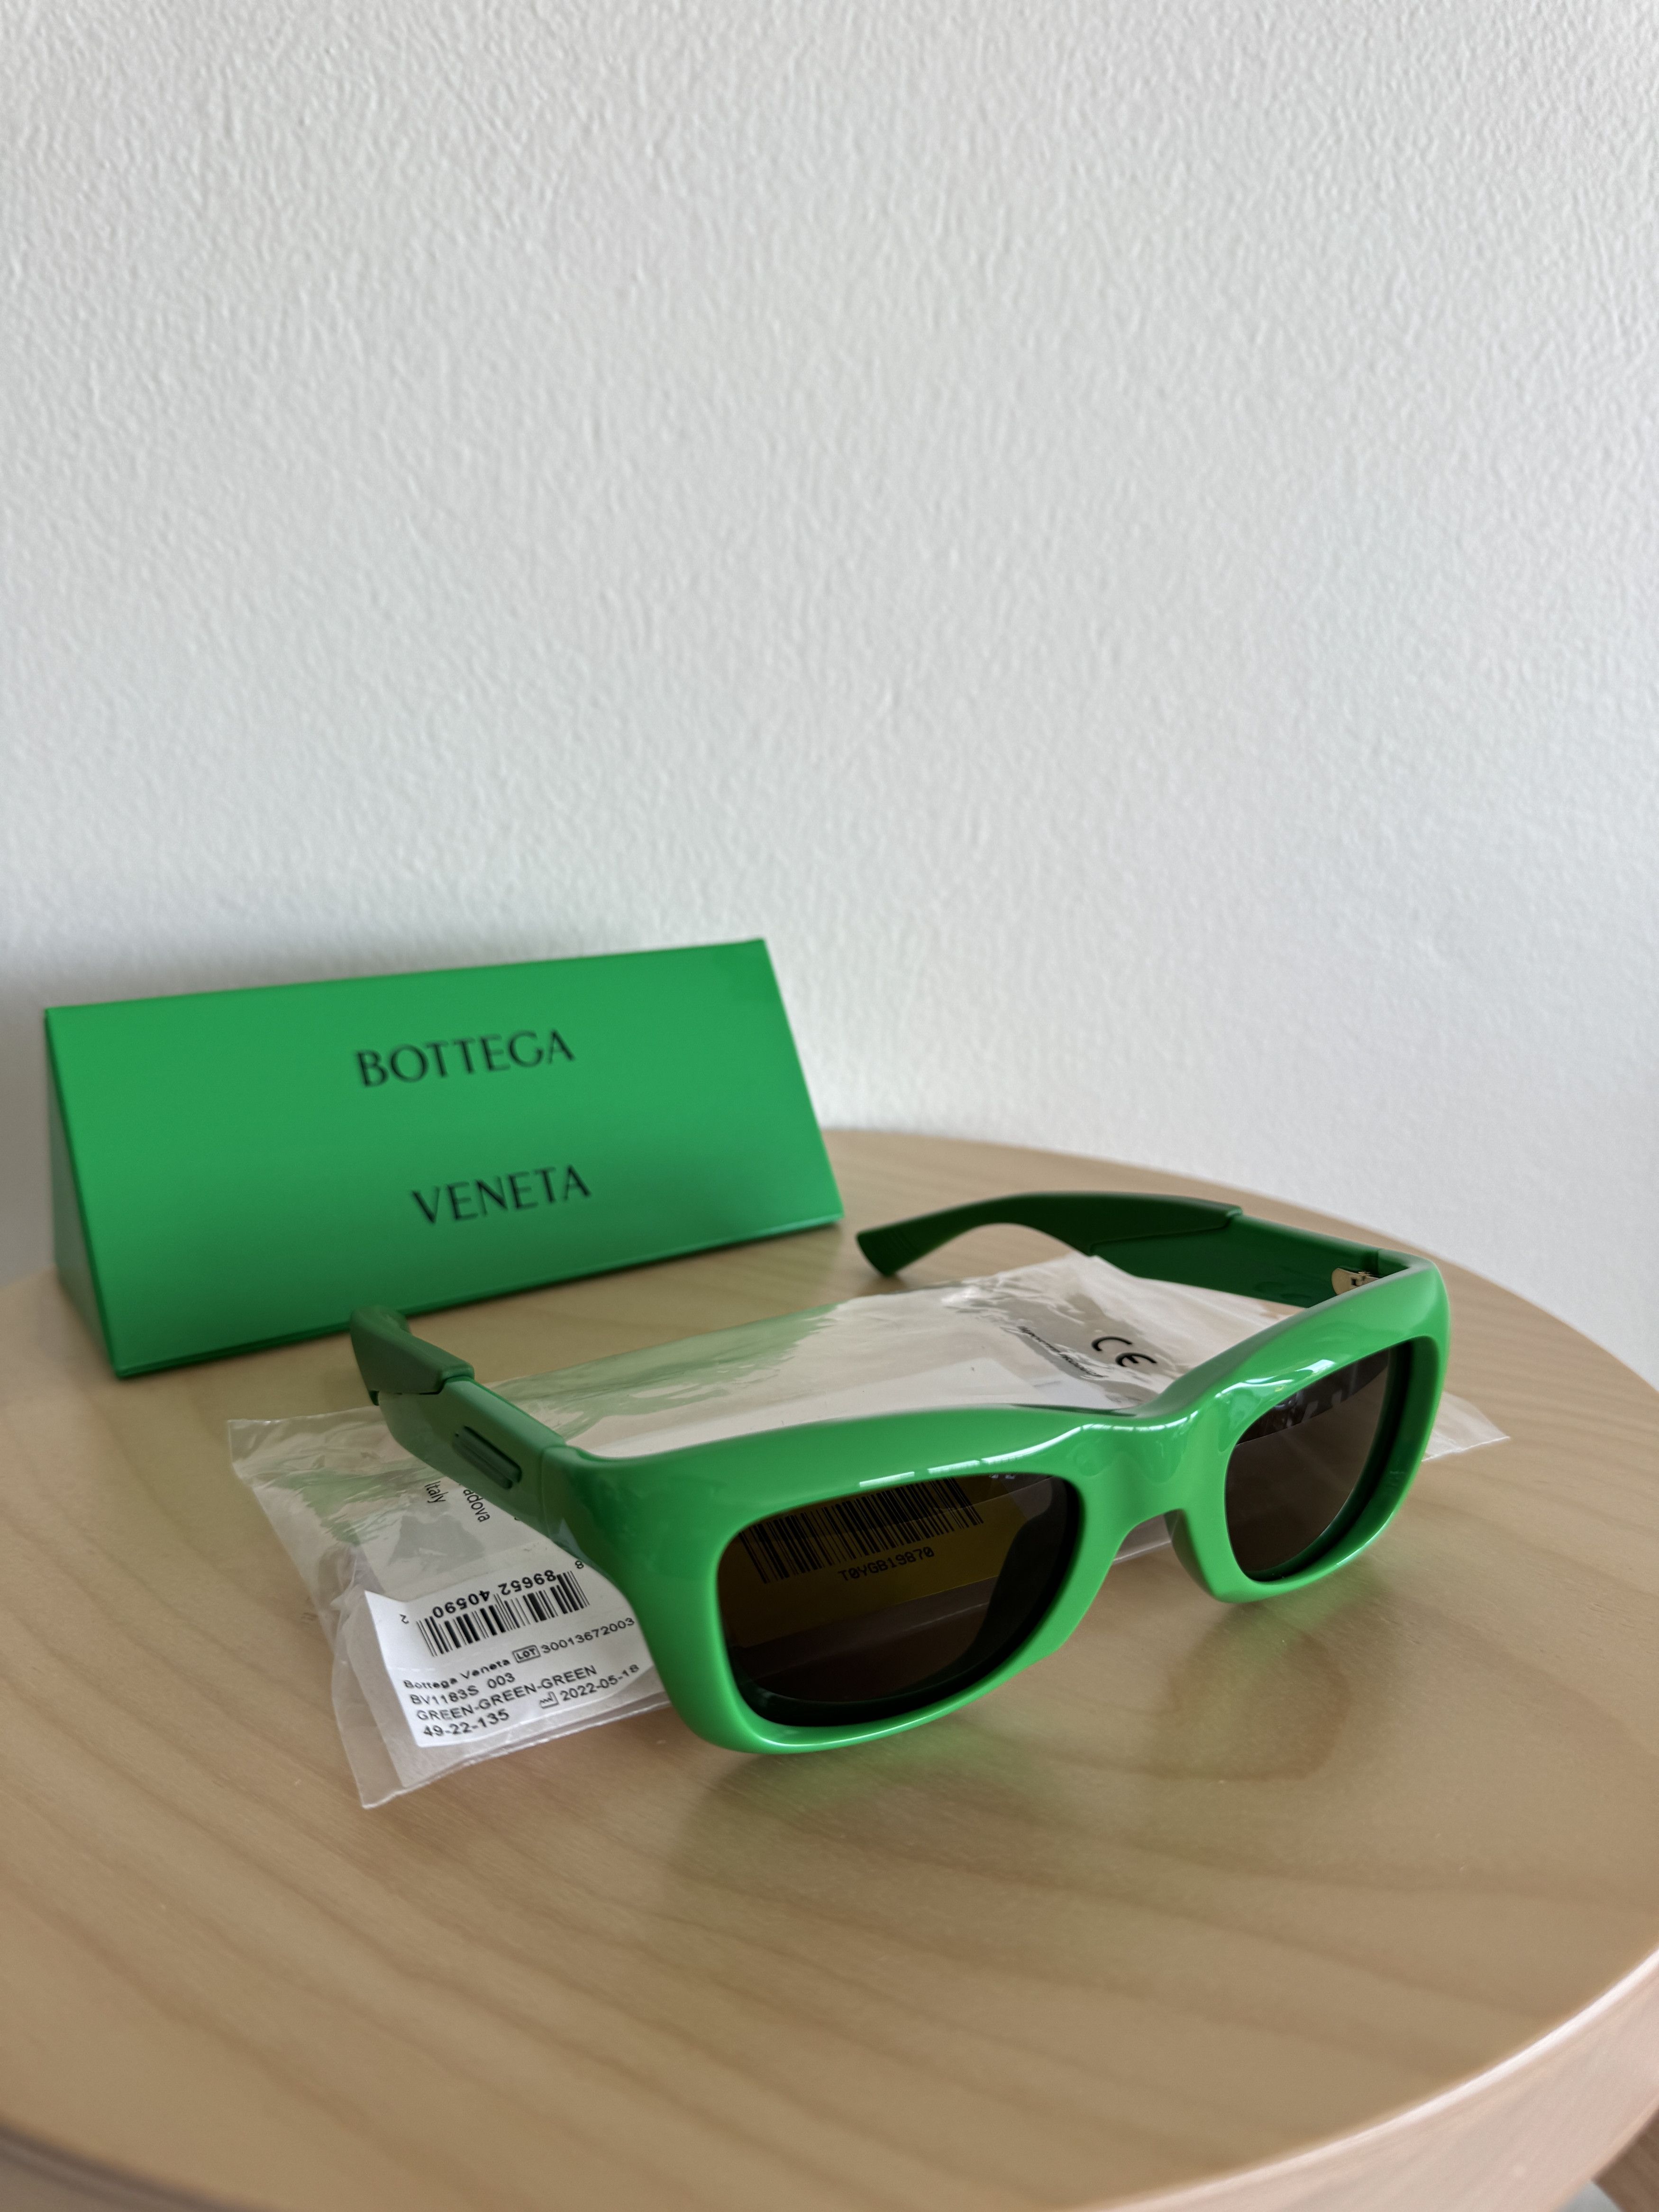 Bottega Veneta BV1183S 003 Sunglasses Green